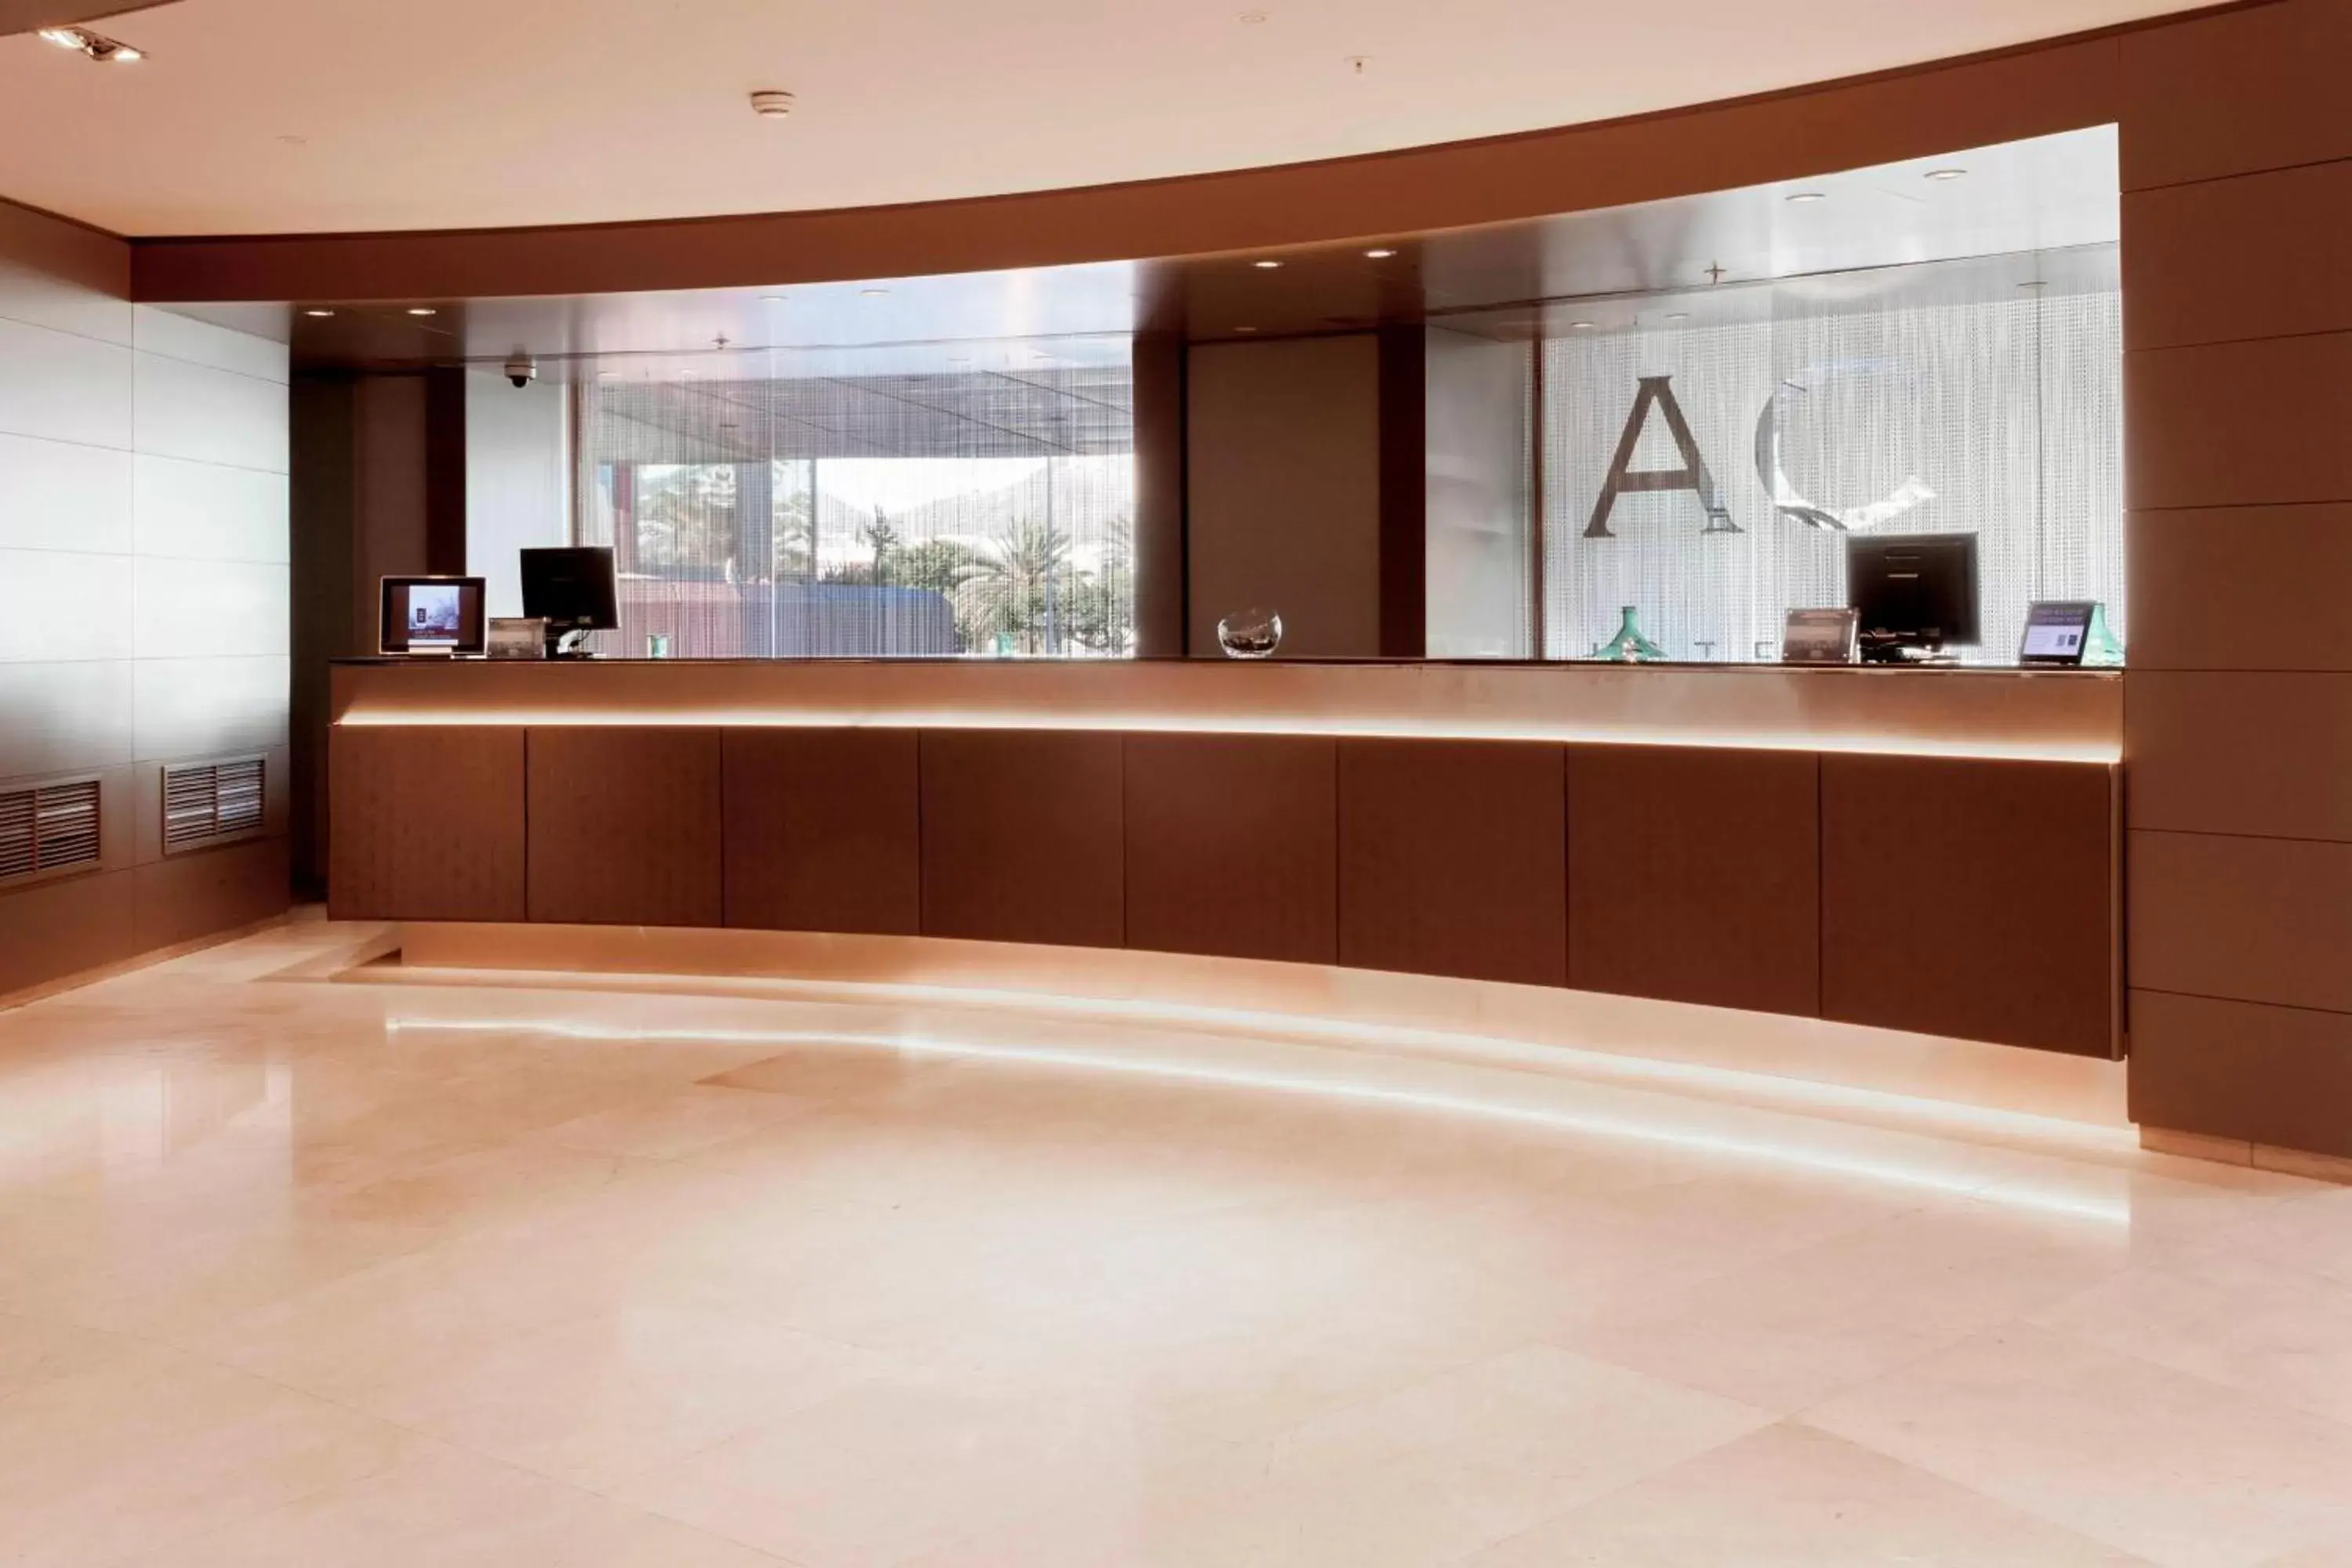 Lobby or reception, Lobby/Reception in AC Hotel Gran Canaria by Marriott